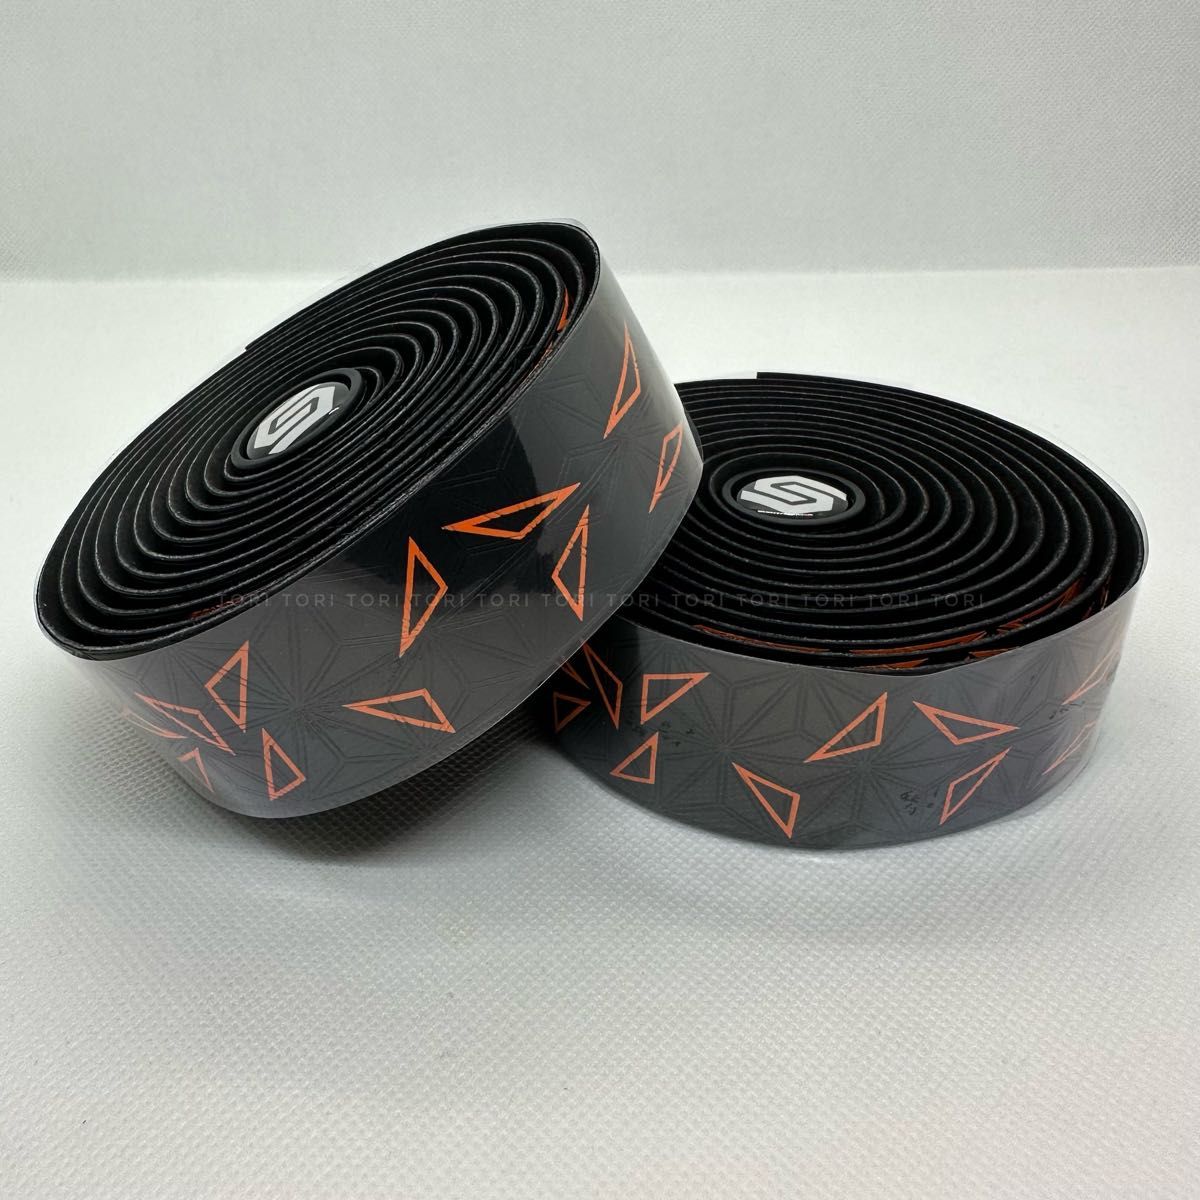 自転車 バーテープ ハンドルテープ 三角形模様カラー オレンジ